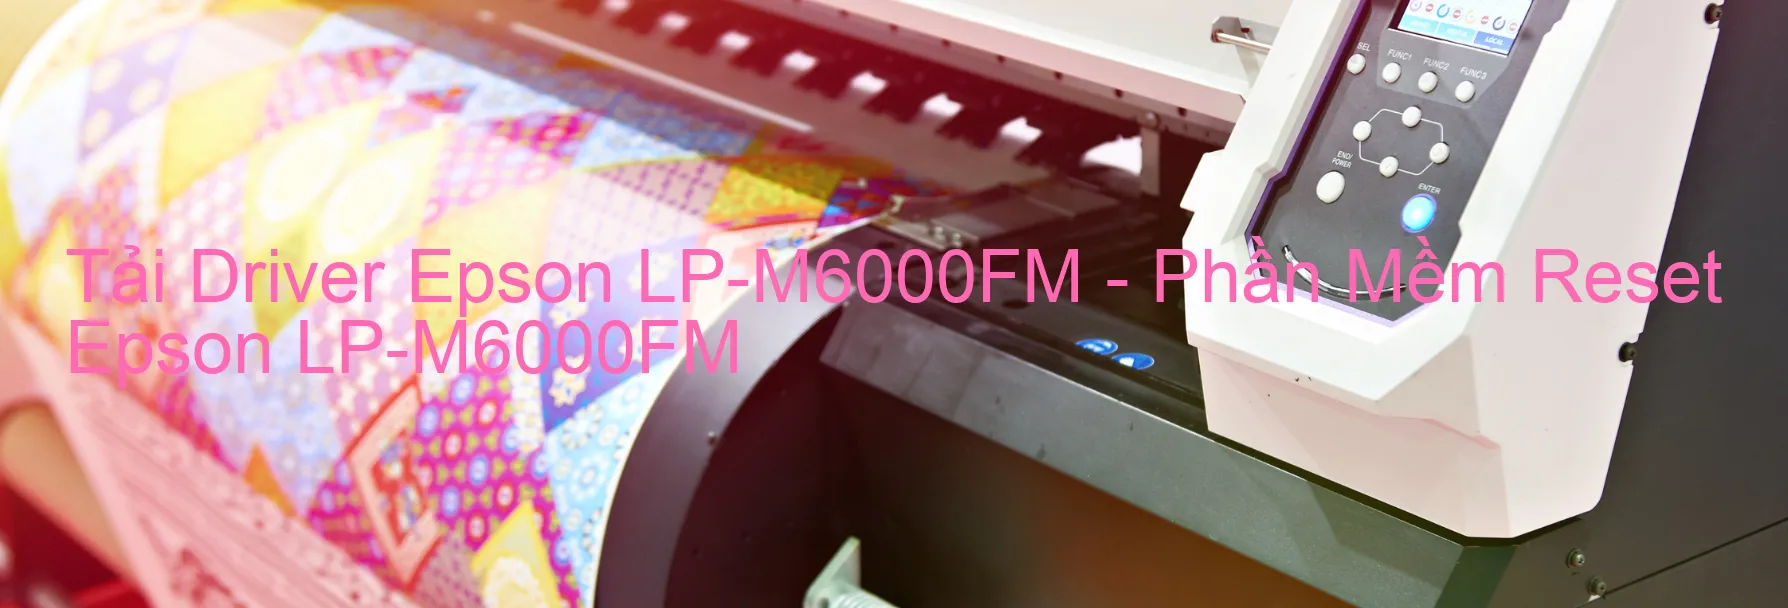 Driver Epson LP-M6000FM, Phần Mềm Reset Epson LP-M6000FM